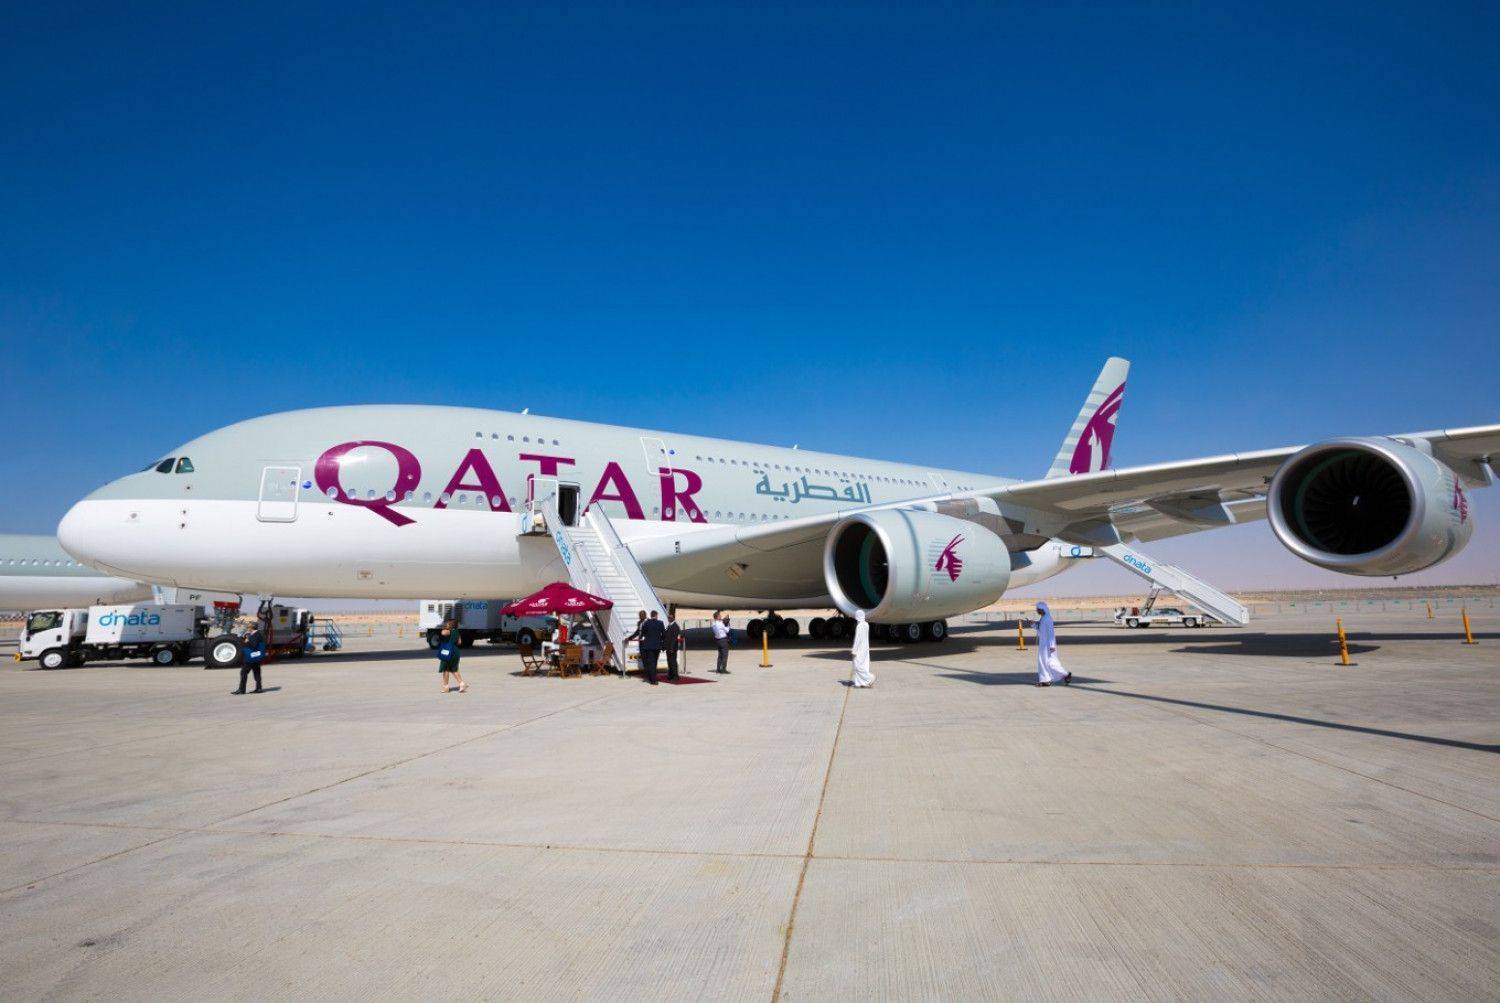 Правила провоза ручной клади на самолетах qatar airways - наш багаж